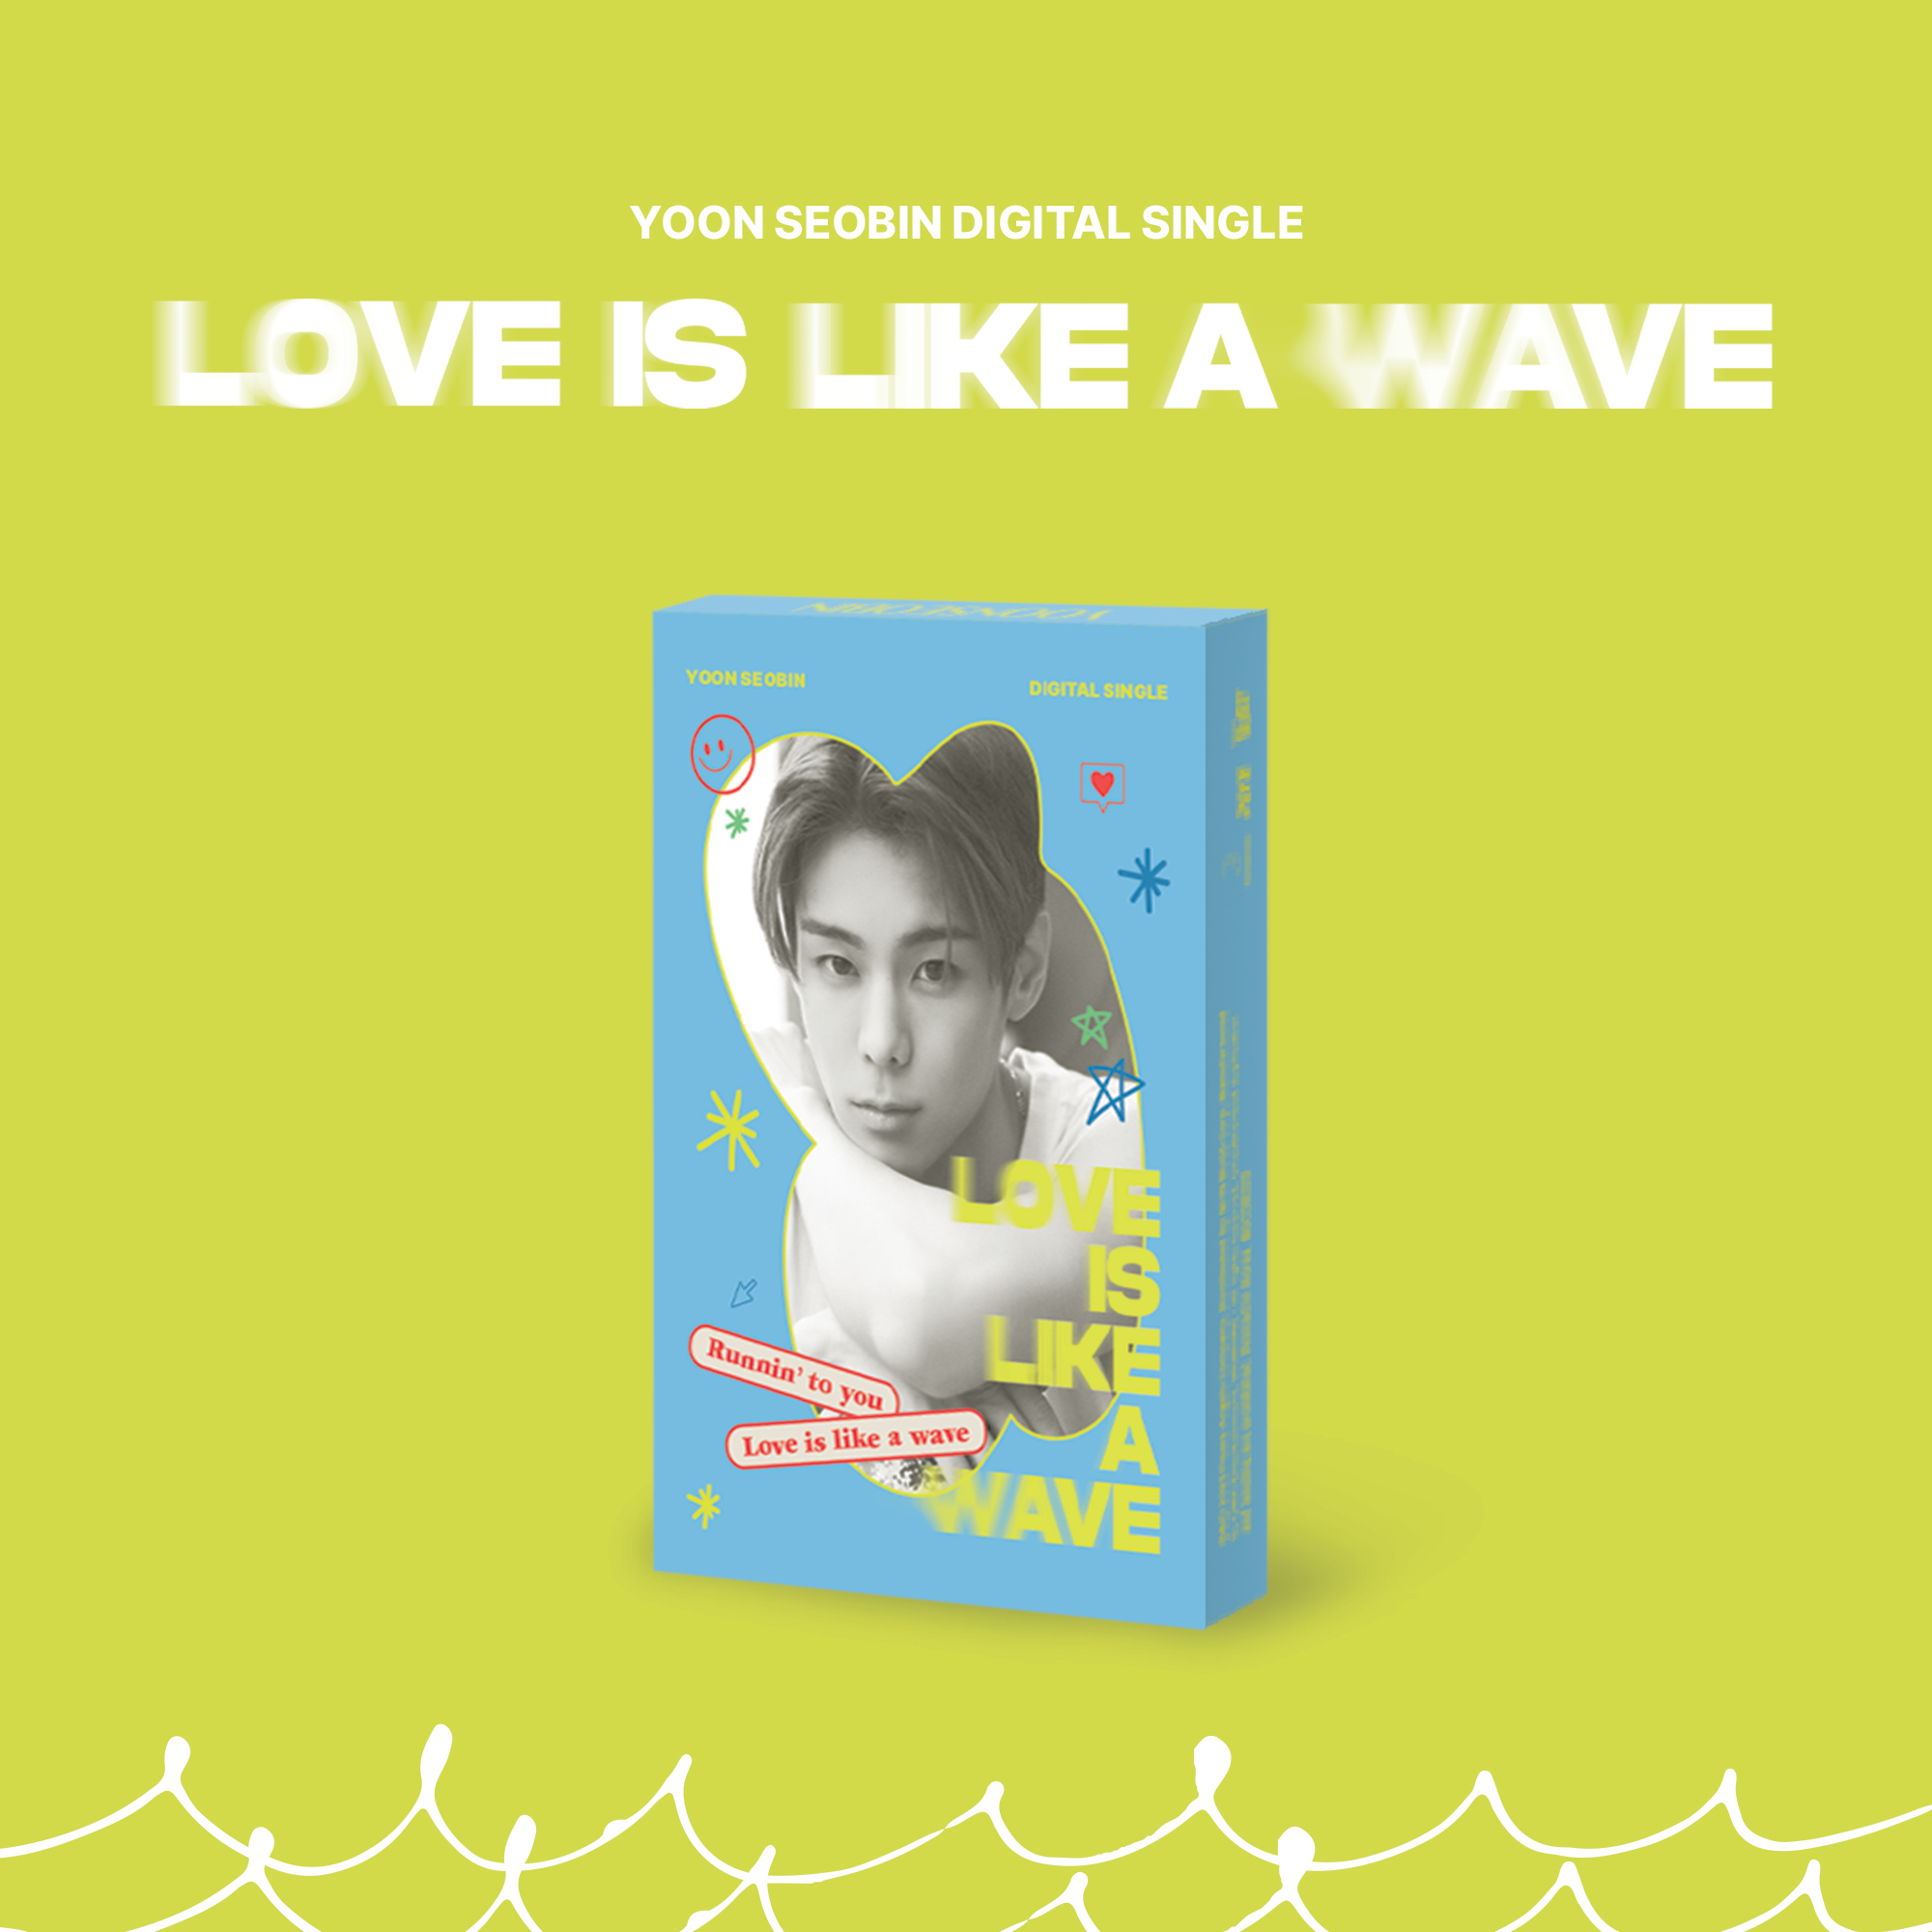 [全款 裸专] [Ktown4u Special Gift] Yoon Seobin - DIGITAL SINGLE [파도쳐 (Love is like a wave)] (PLVE)_MoBae_Monique